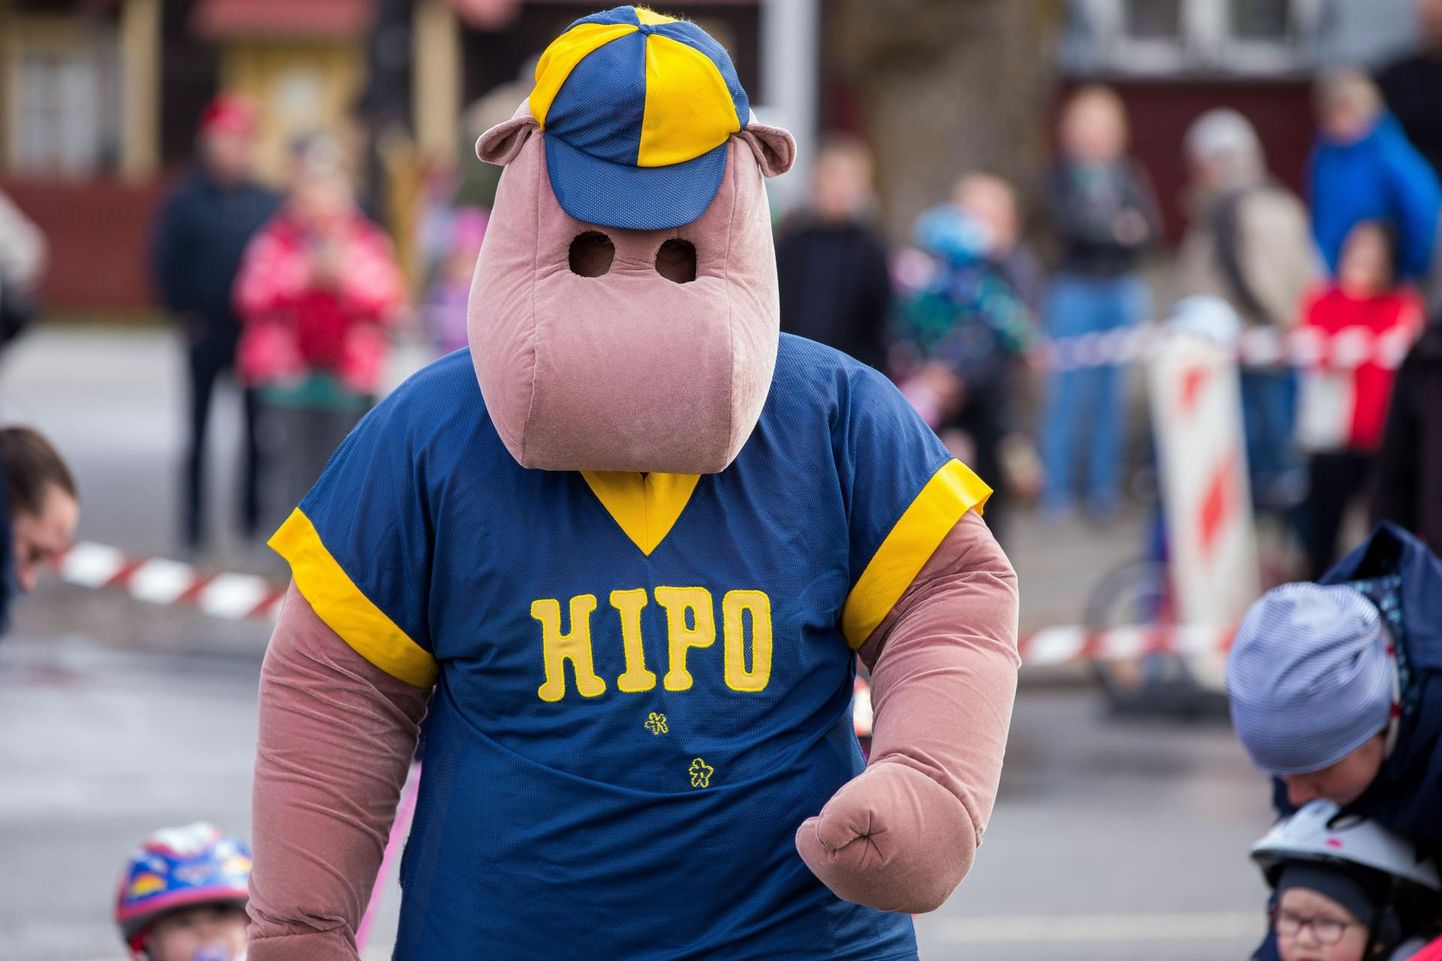 Paide kesklinnas 1. mail peetaval laste jalgrattasõidul on mudilasi rõõmustamas jõehobu Hipo. Maskoti kostüümi sees on alati olnud Kulno Klein, kellest sai nüüd Paide linnapea.